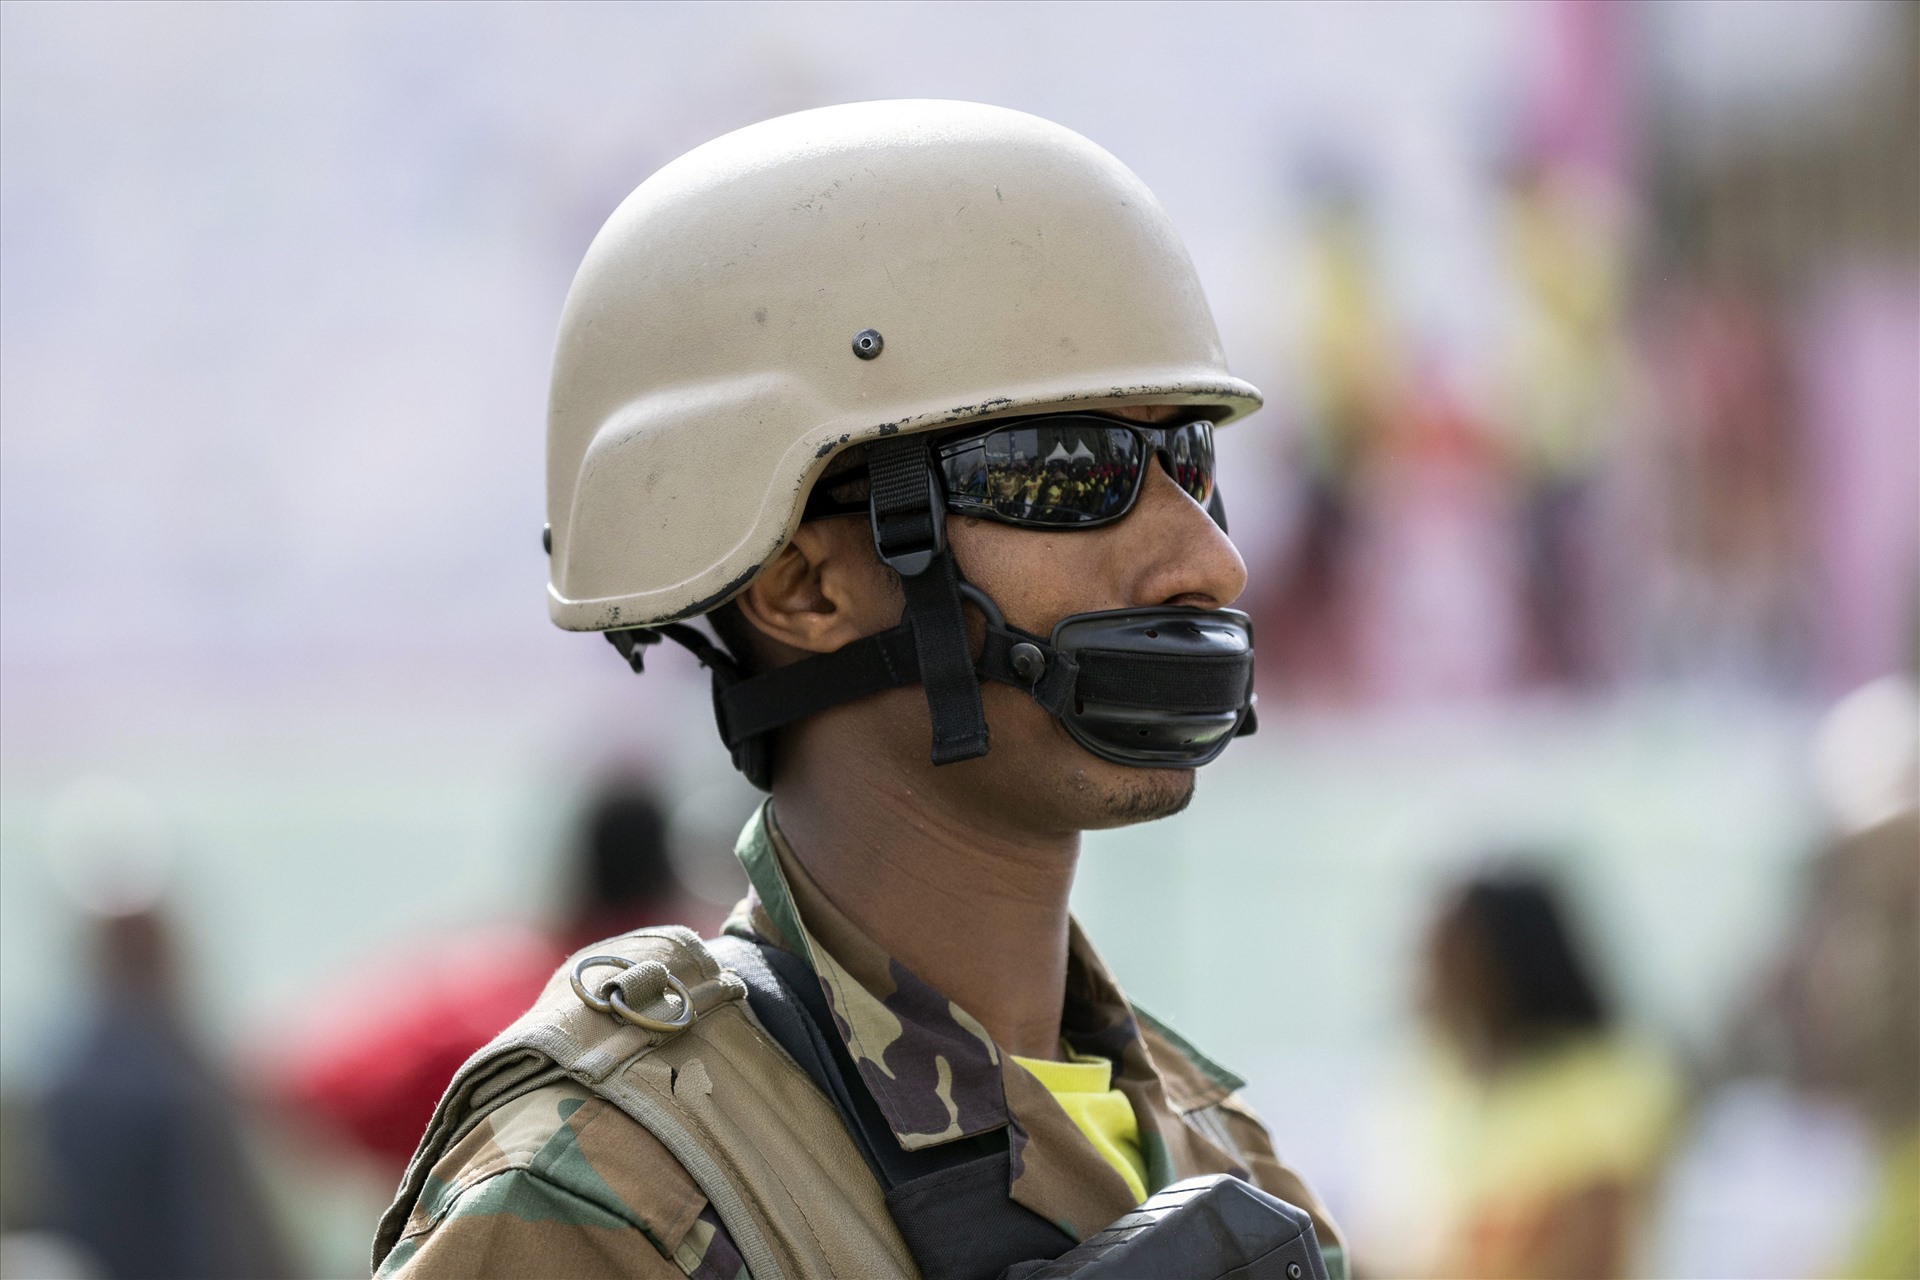 Một người lính làm nhiệm vụ bảo vệ an ninh tại một sự kiện ở Addis Ababa, Ethiopia, ngày 15.3. Ảnh: AP